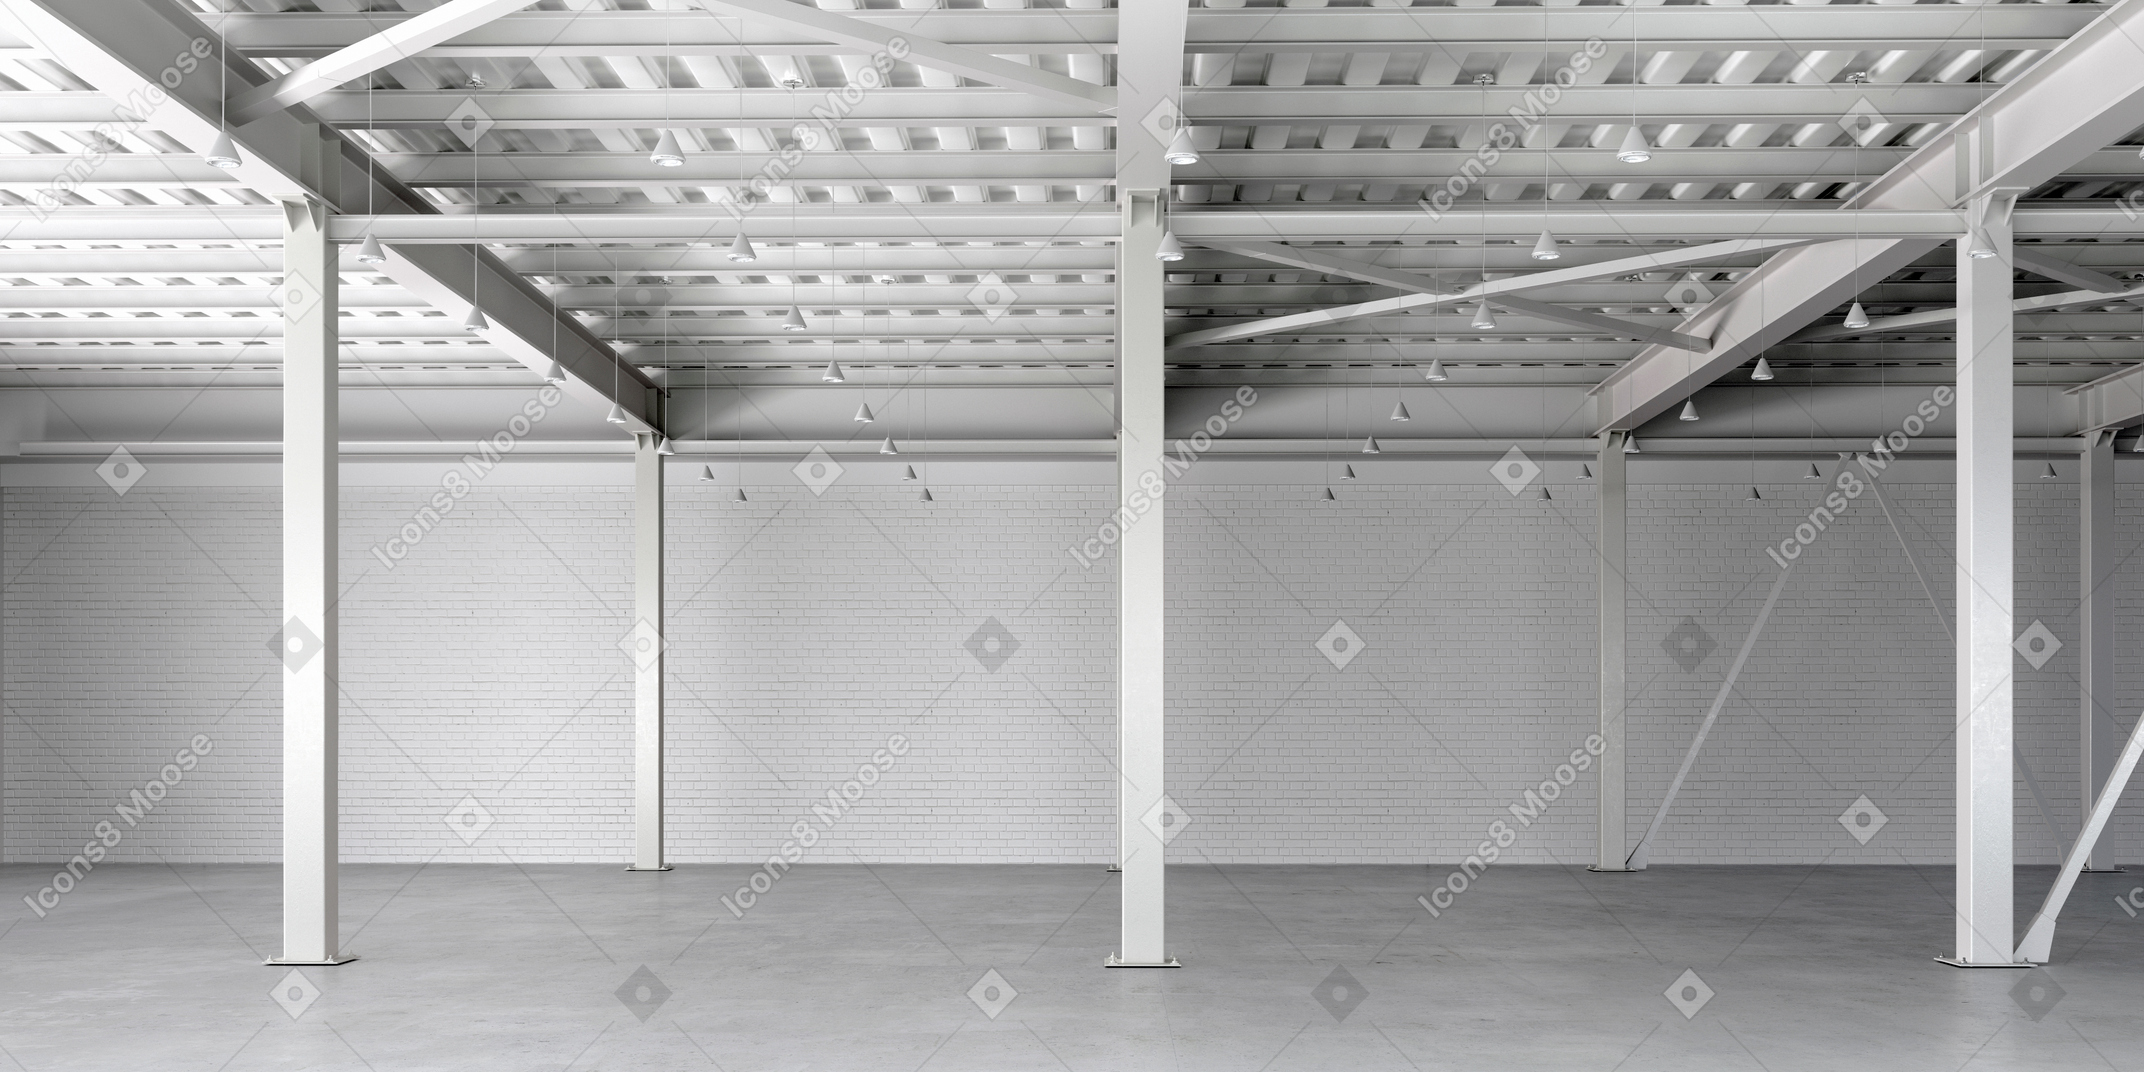 Garage vuoto con pilastri di supporto bianchi